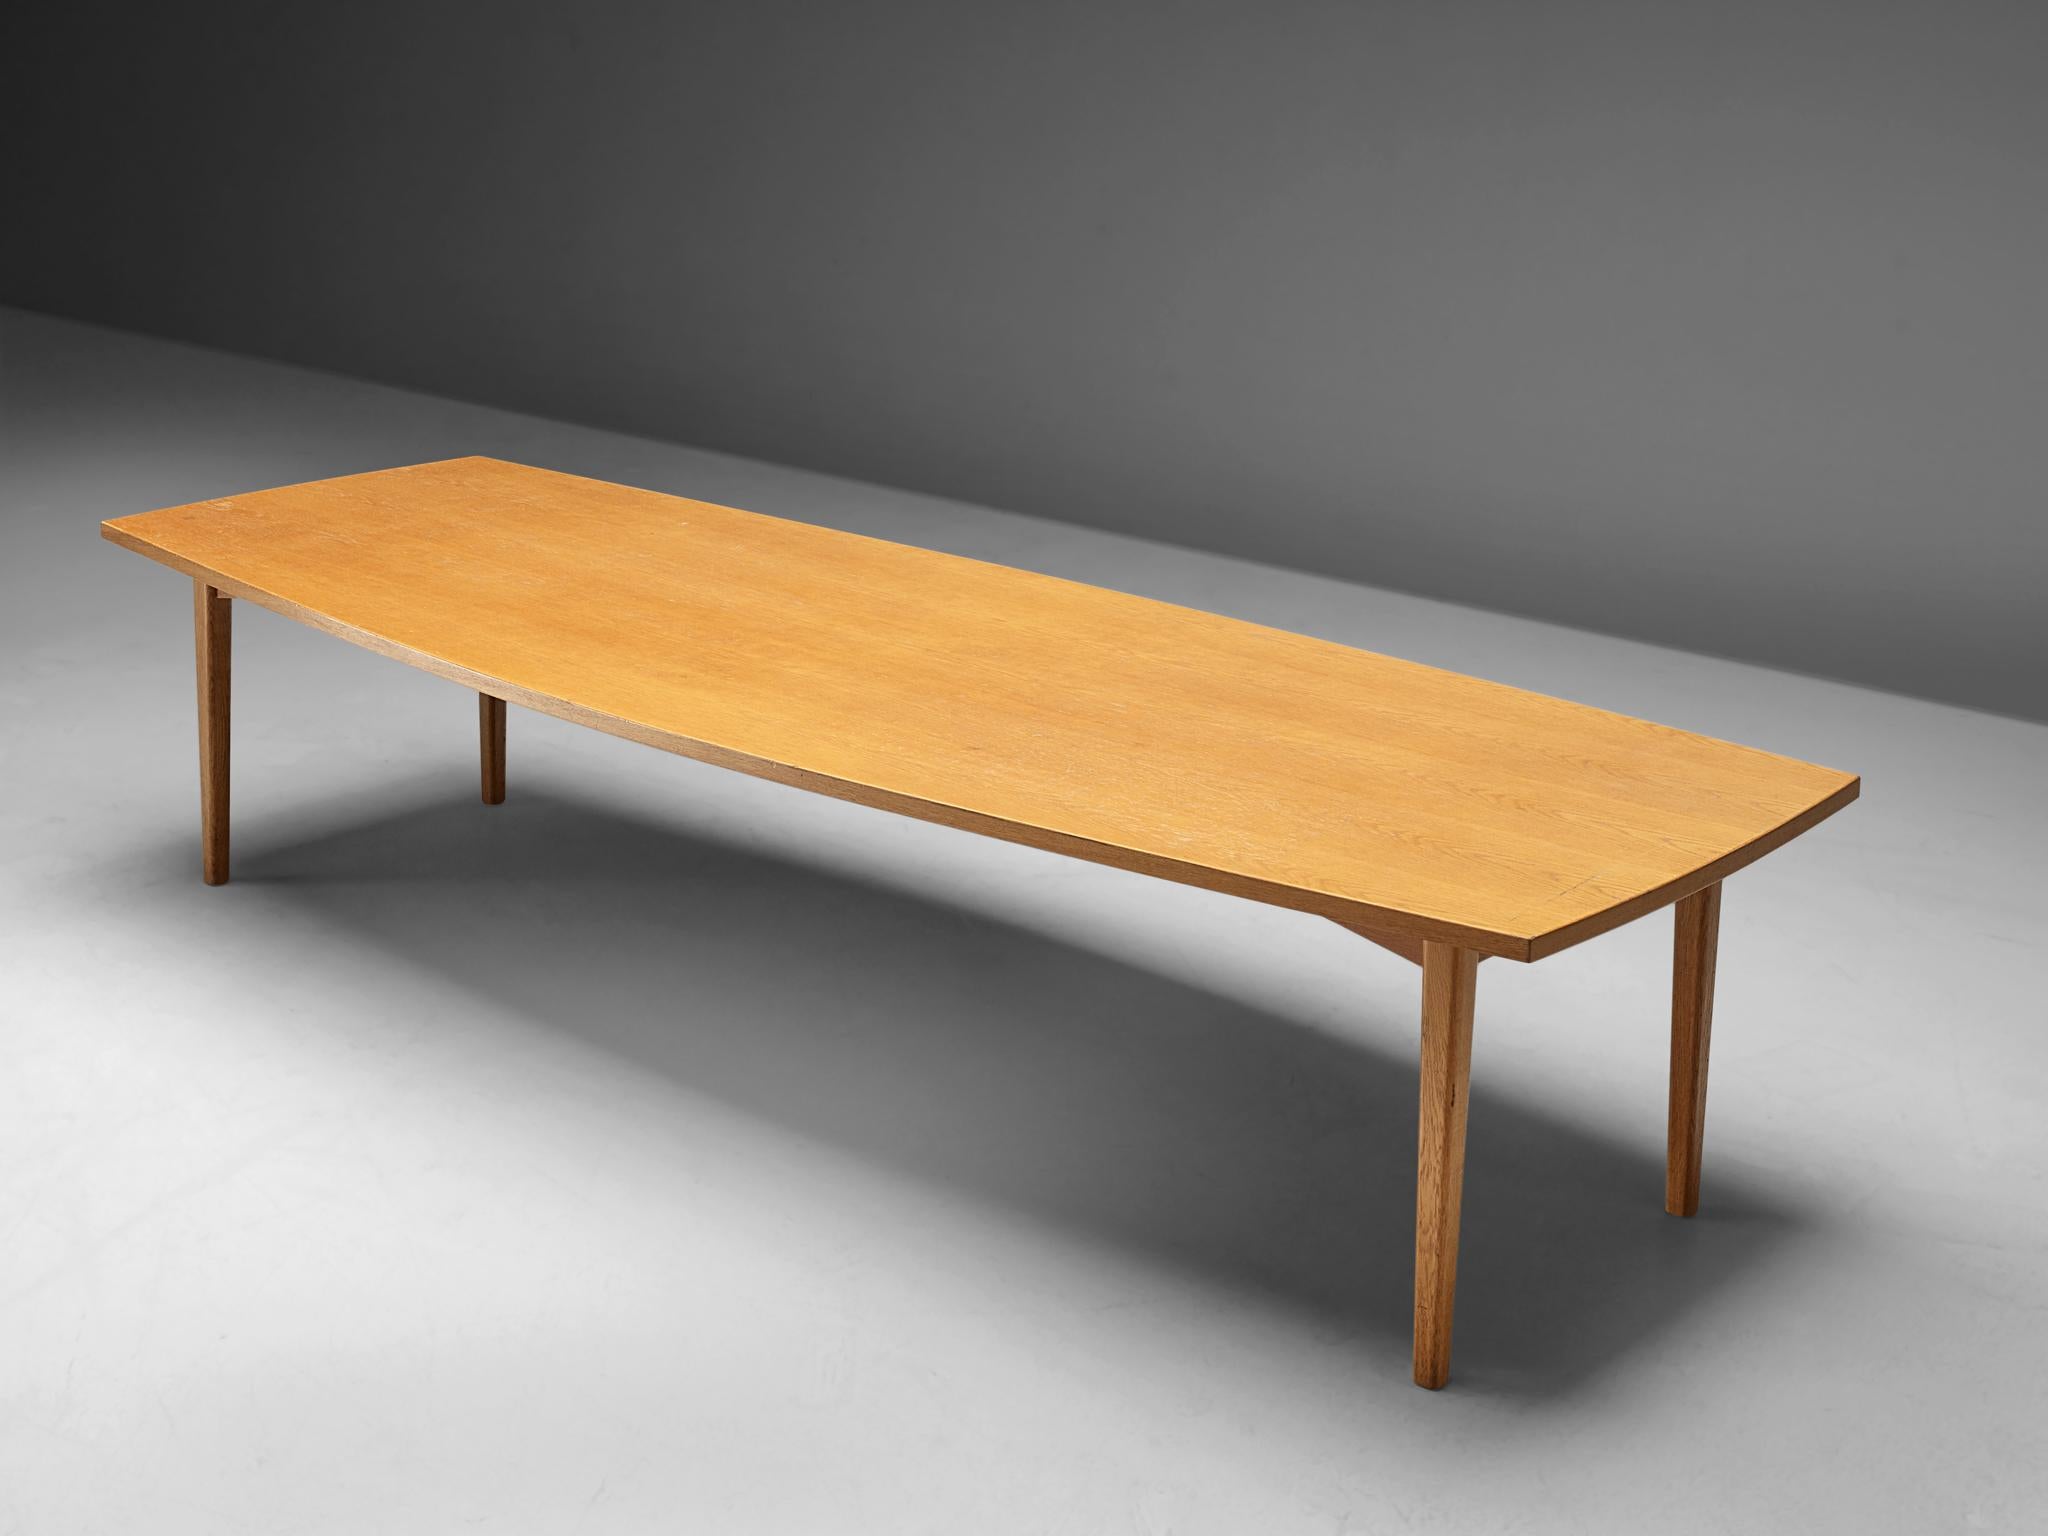 Konferenztisch, Eiche, Dänemark, 1950er Jahre.

Ein großer Esstisch aus Eichenholz. Die bootsförmige Tischplatte ist aus einem Stück gefertigt und weist eine schöne Maserung auf. Die Basis besteht aus vier schlanken, abgerundeten, rechteckigen